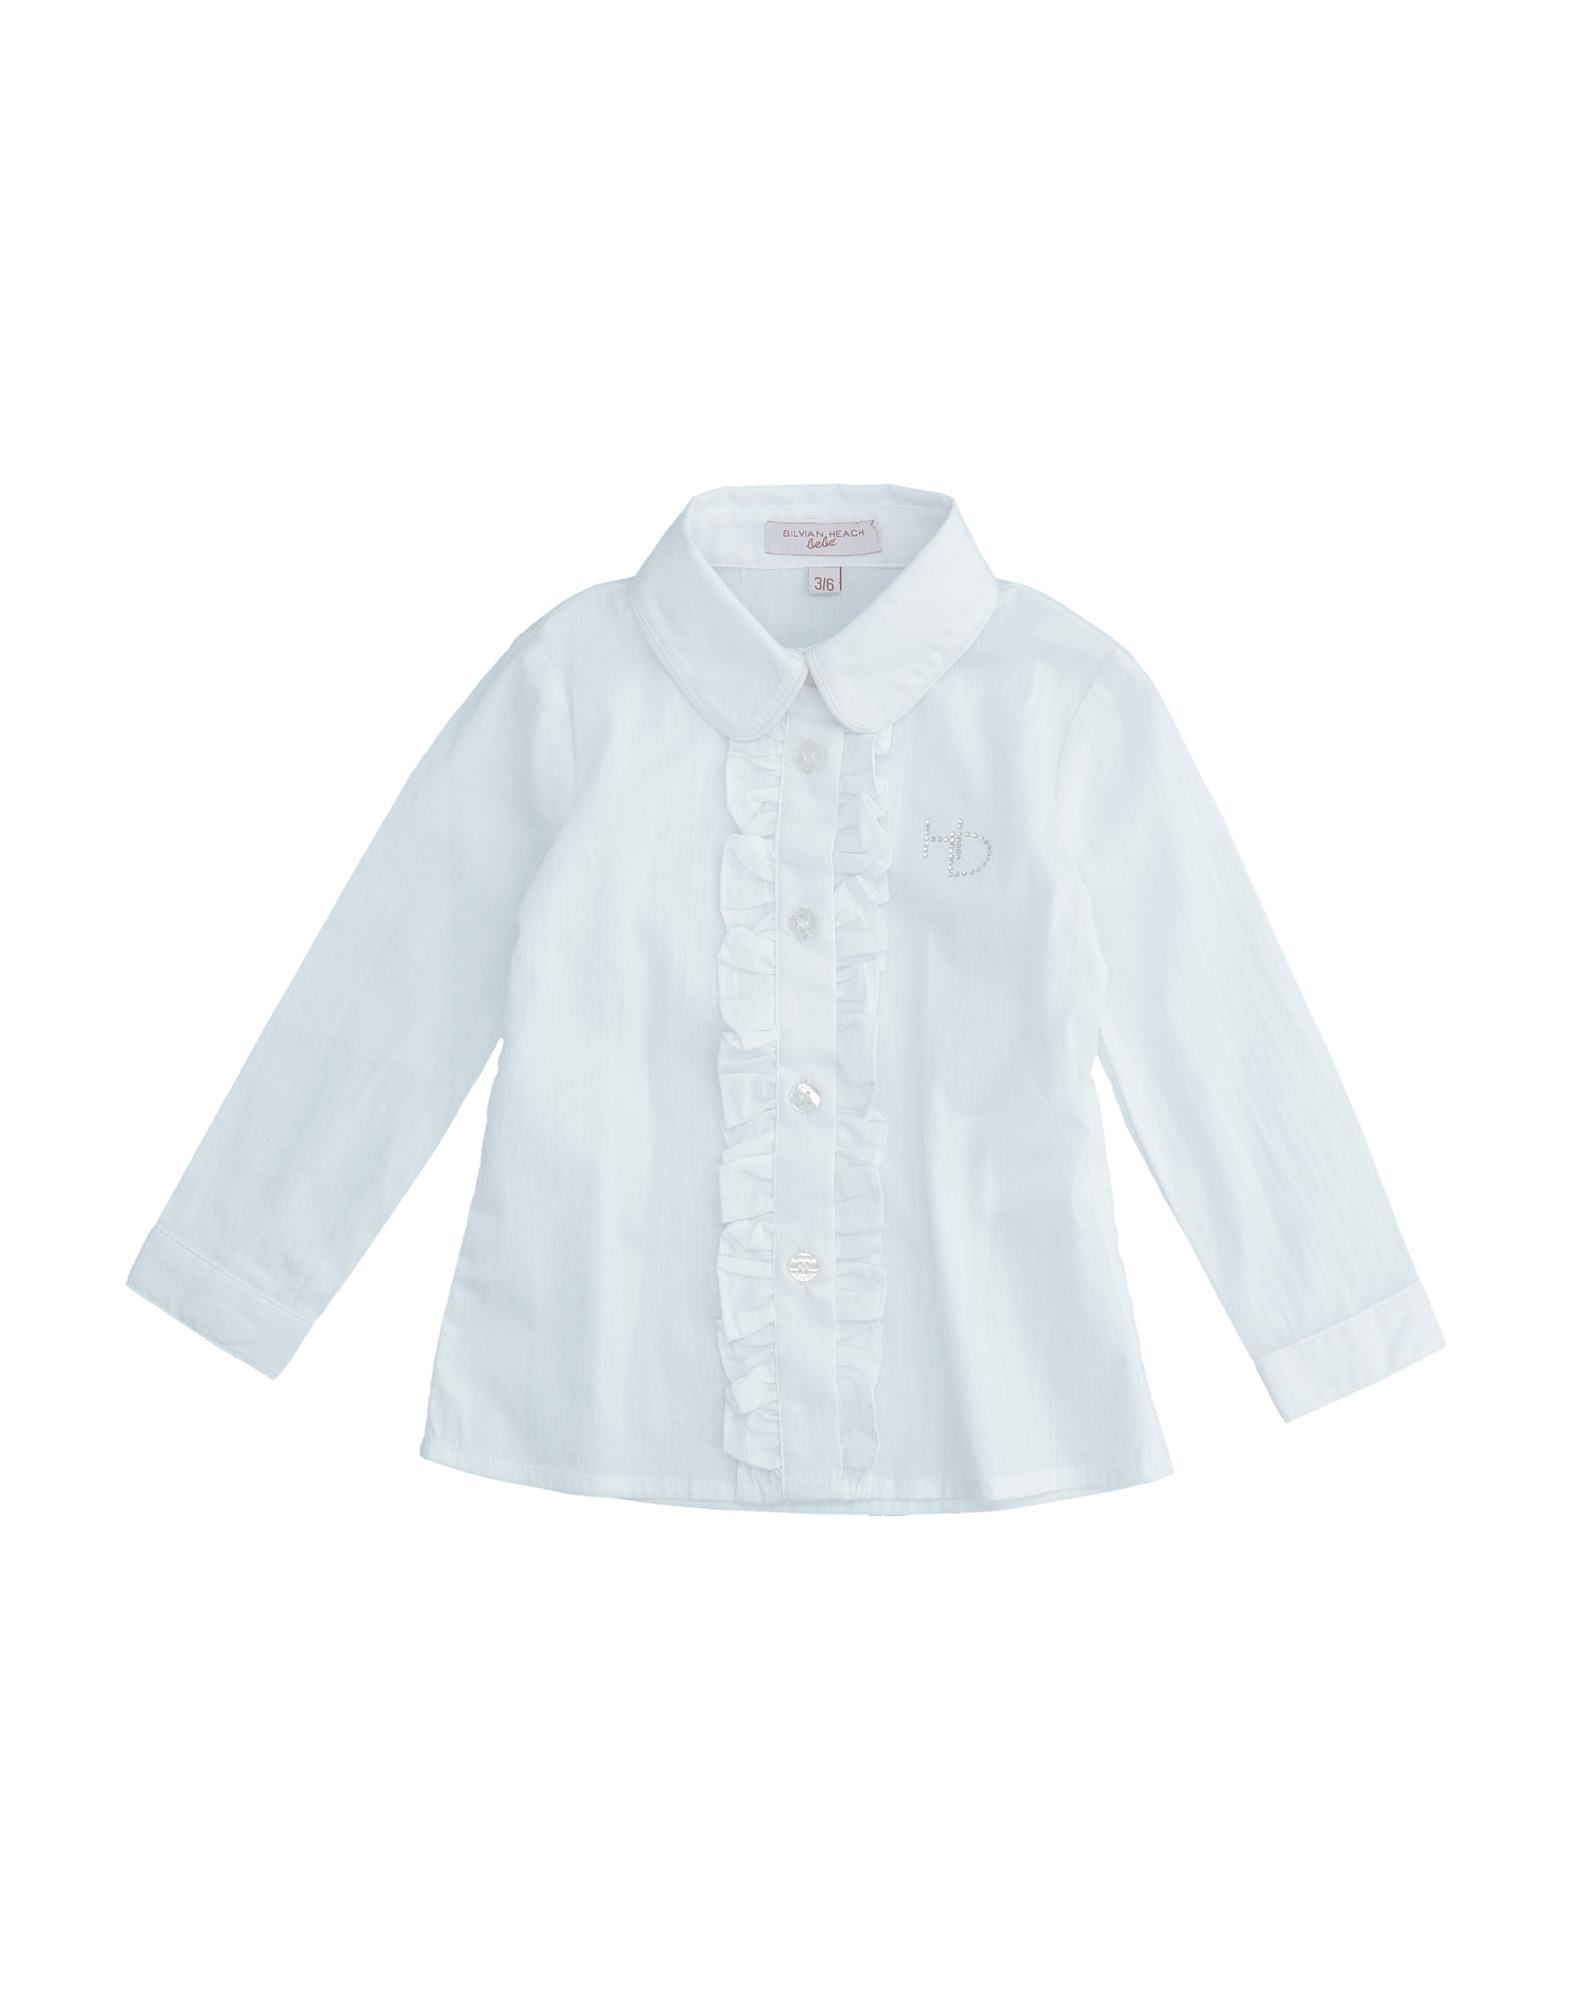 Silvian Heach Kids' Shirts In White